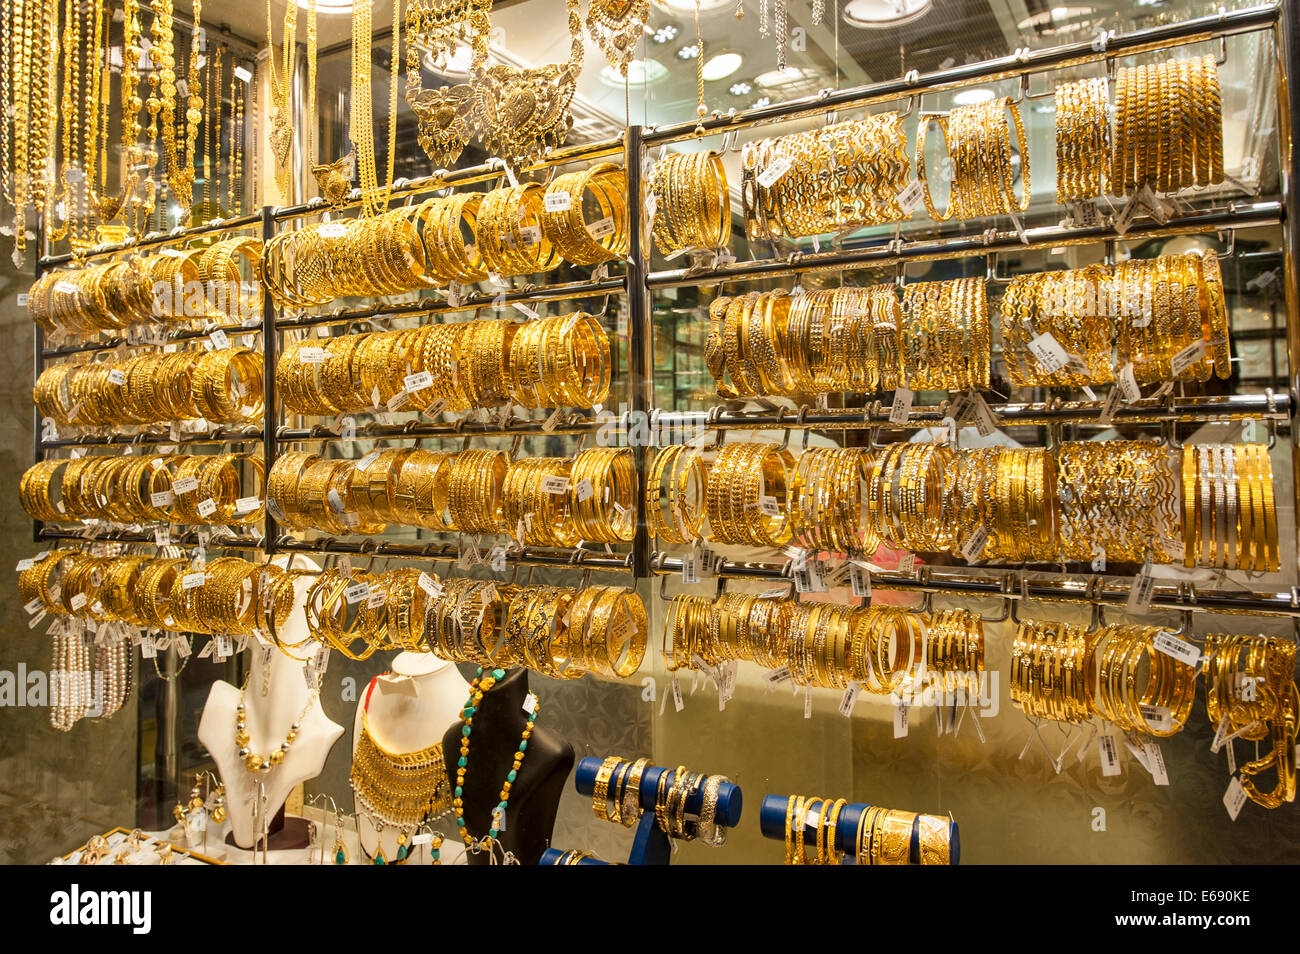 Gold Jewelry In The Deira Gold Souk Market Dubai United Arab Emirates Uae Stock Photo Alamy